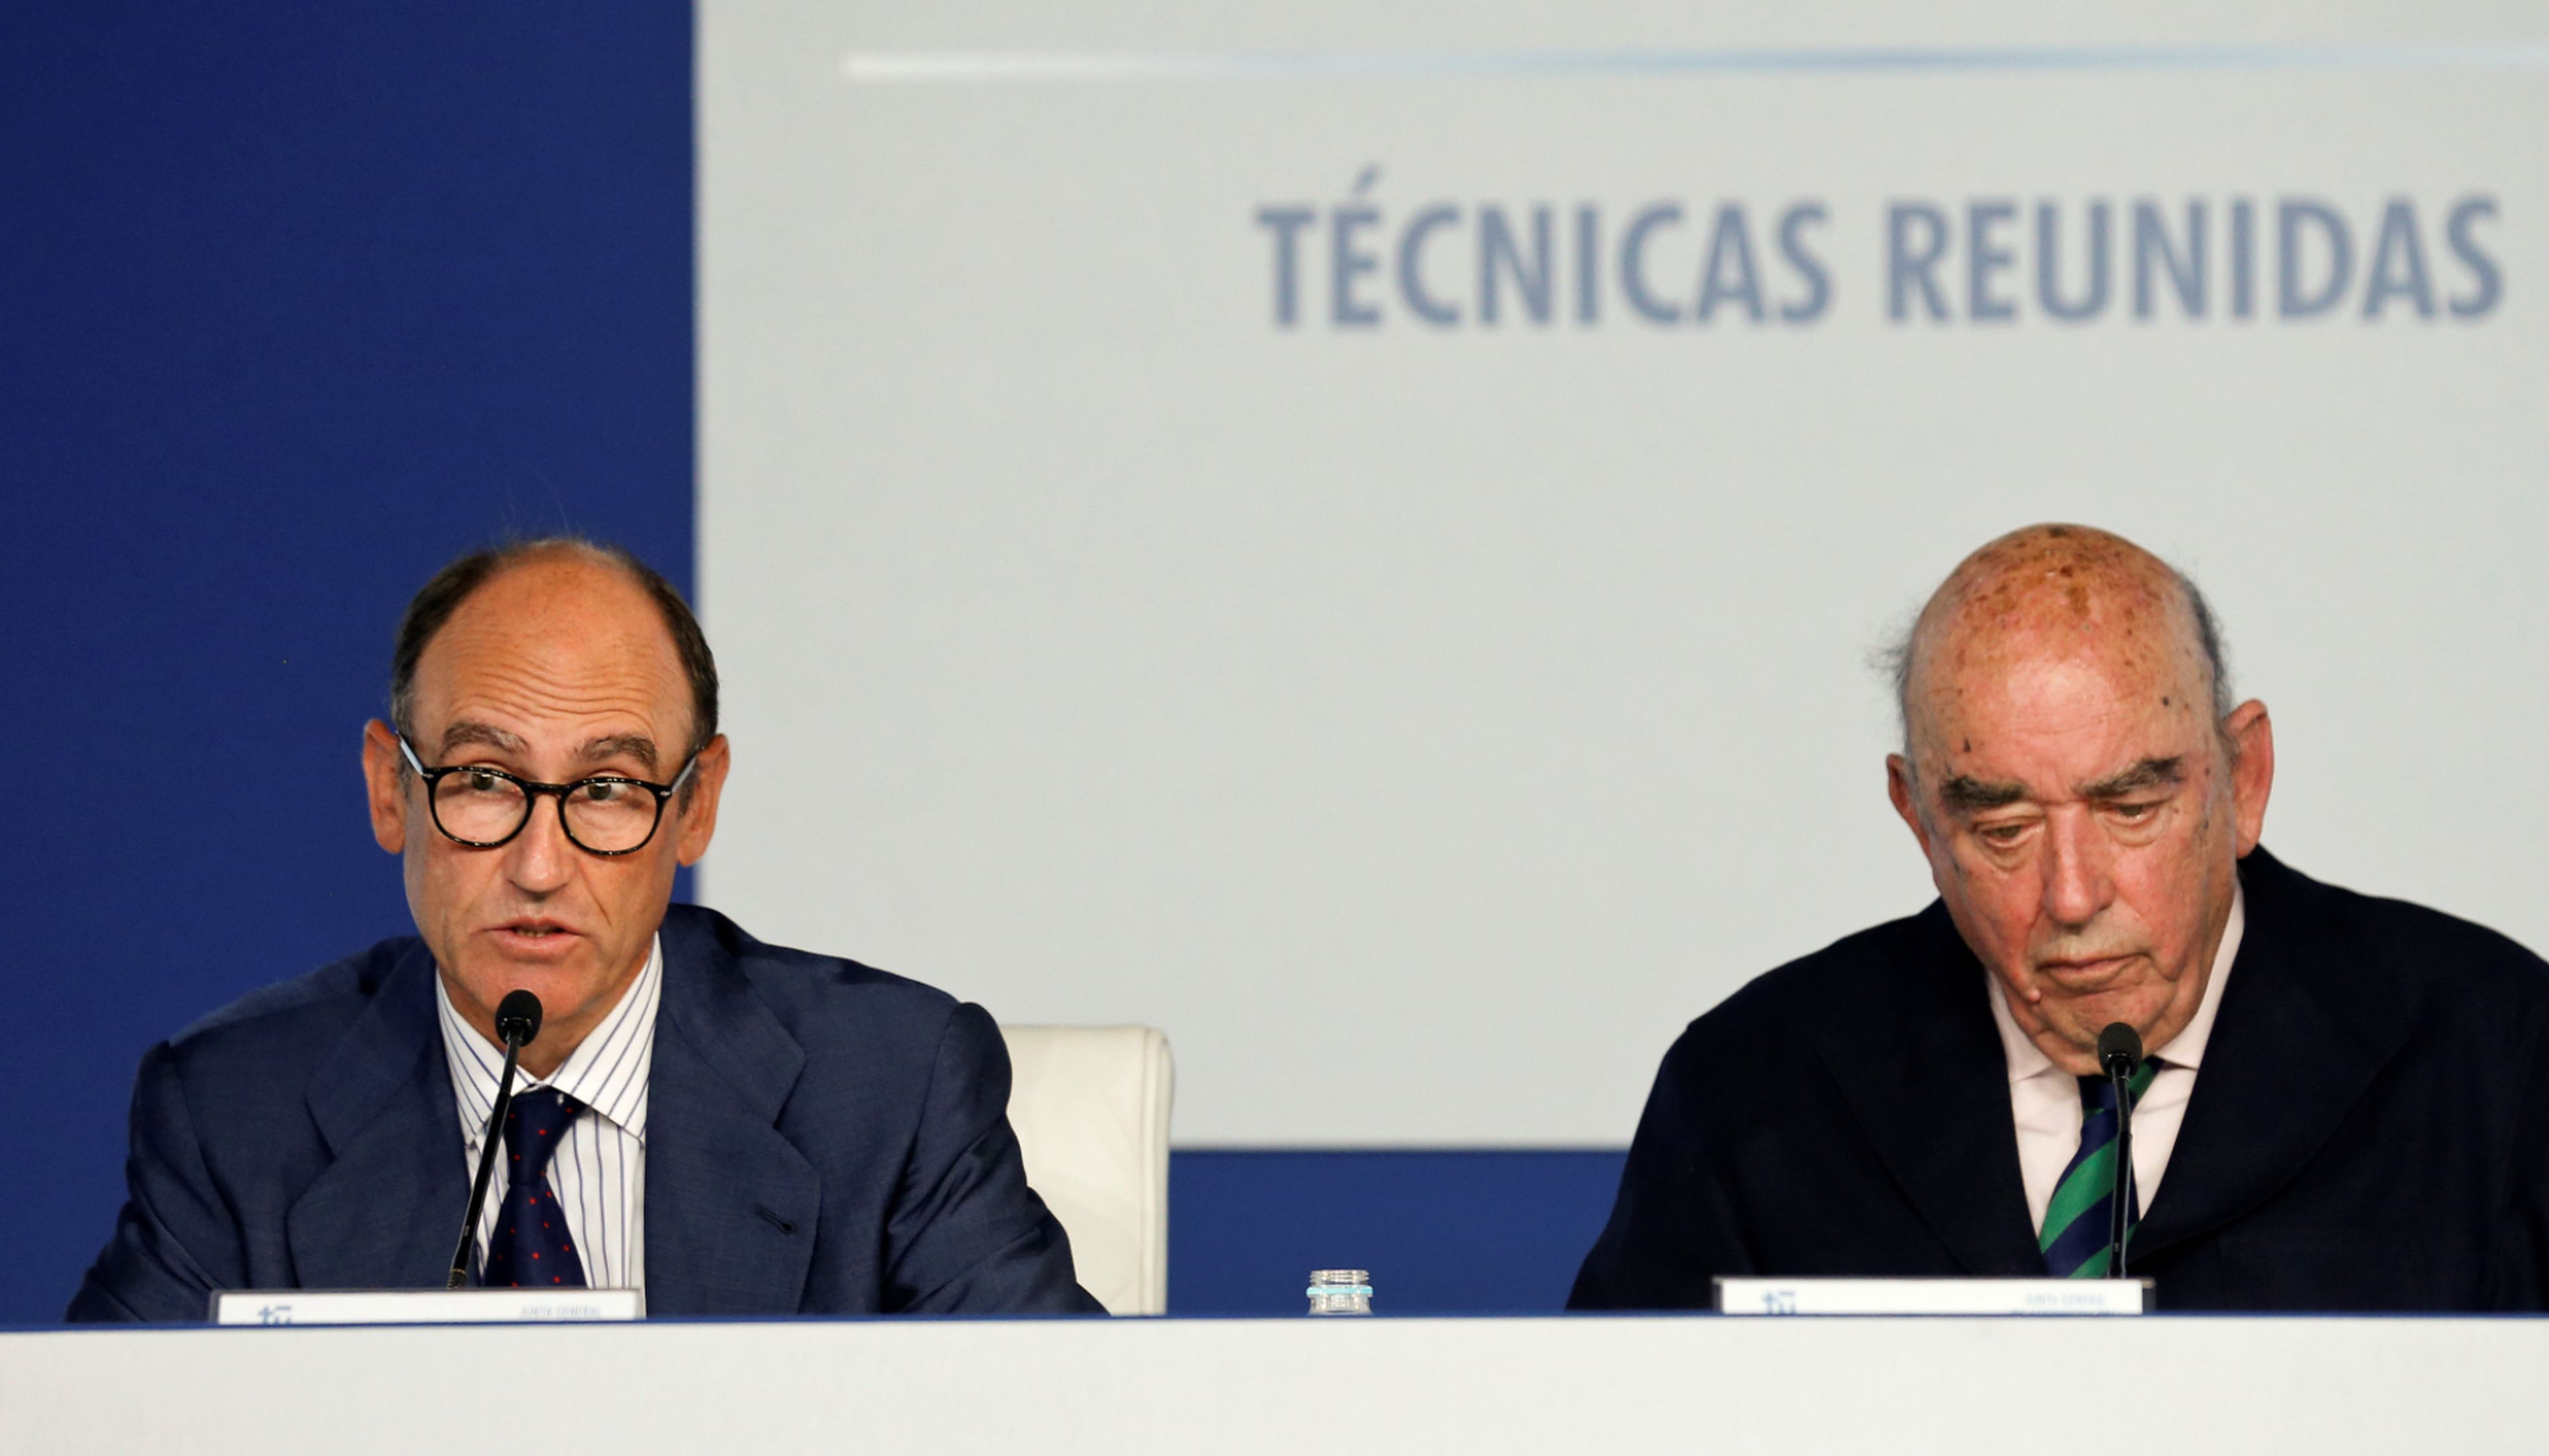 El CEO de Técnicas Reunidas, Juan Lladó, y el presidente de la compañía, José Lladó